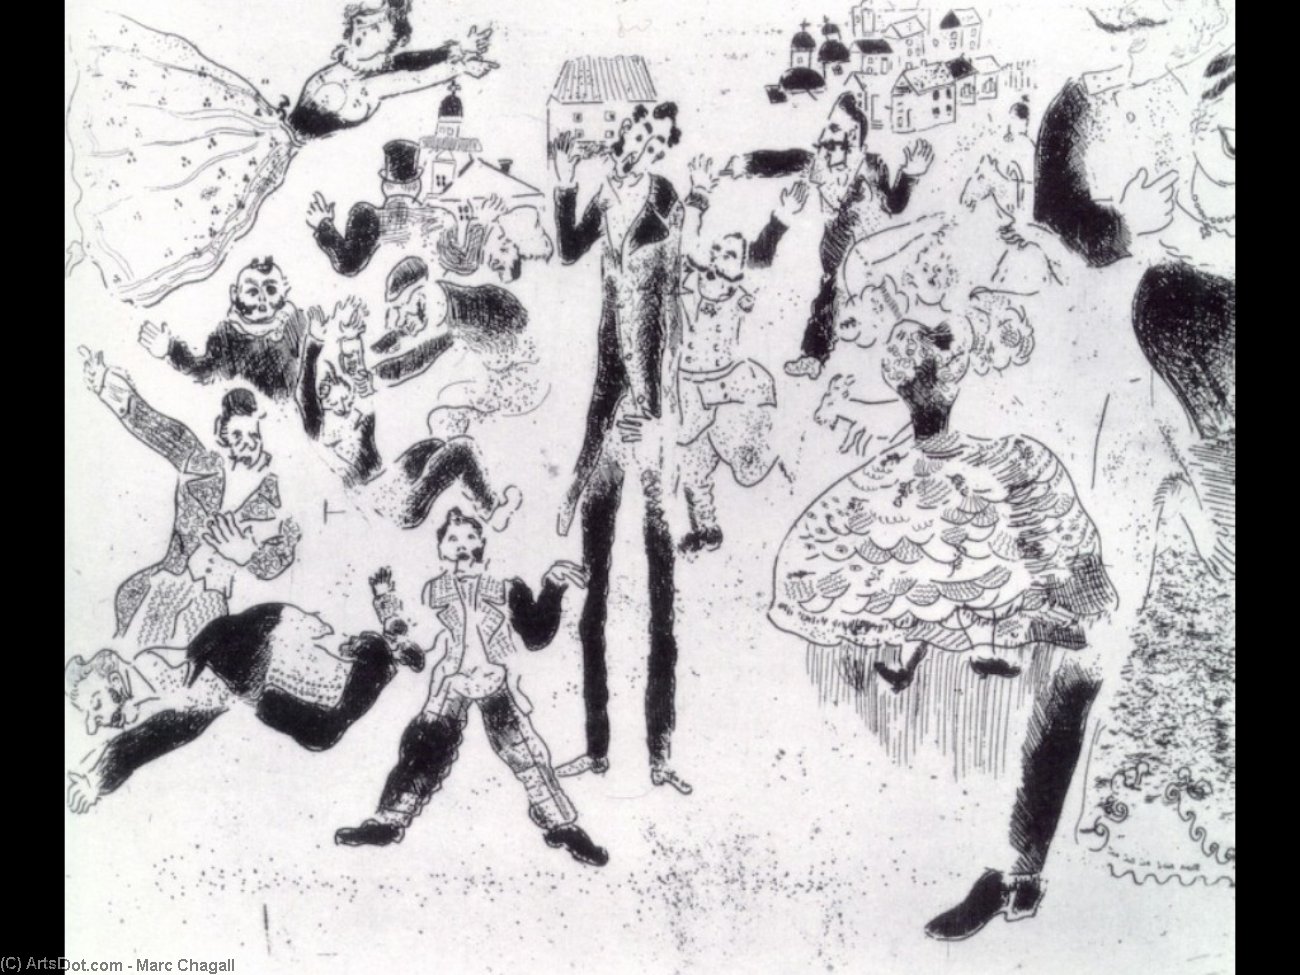 WikiOO.org - Enciklopedija likovnih umjetnosti - Slikarstvo, umjetnička djela Marc Chagall - Banquet degenerates into brawl